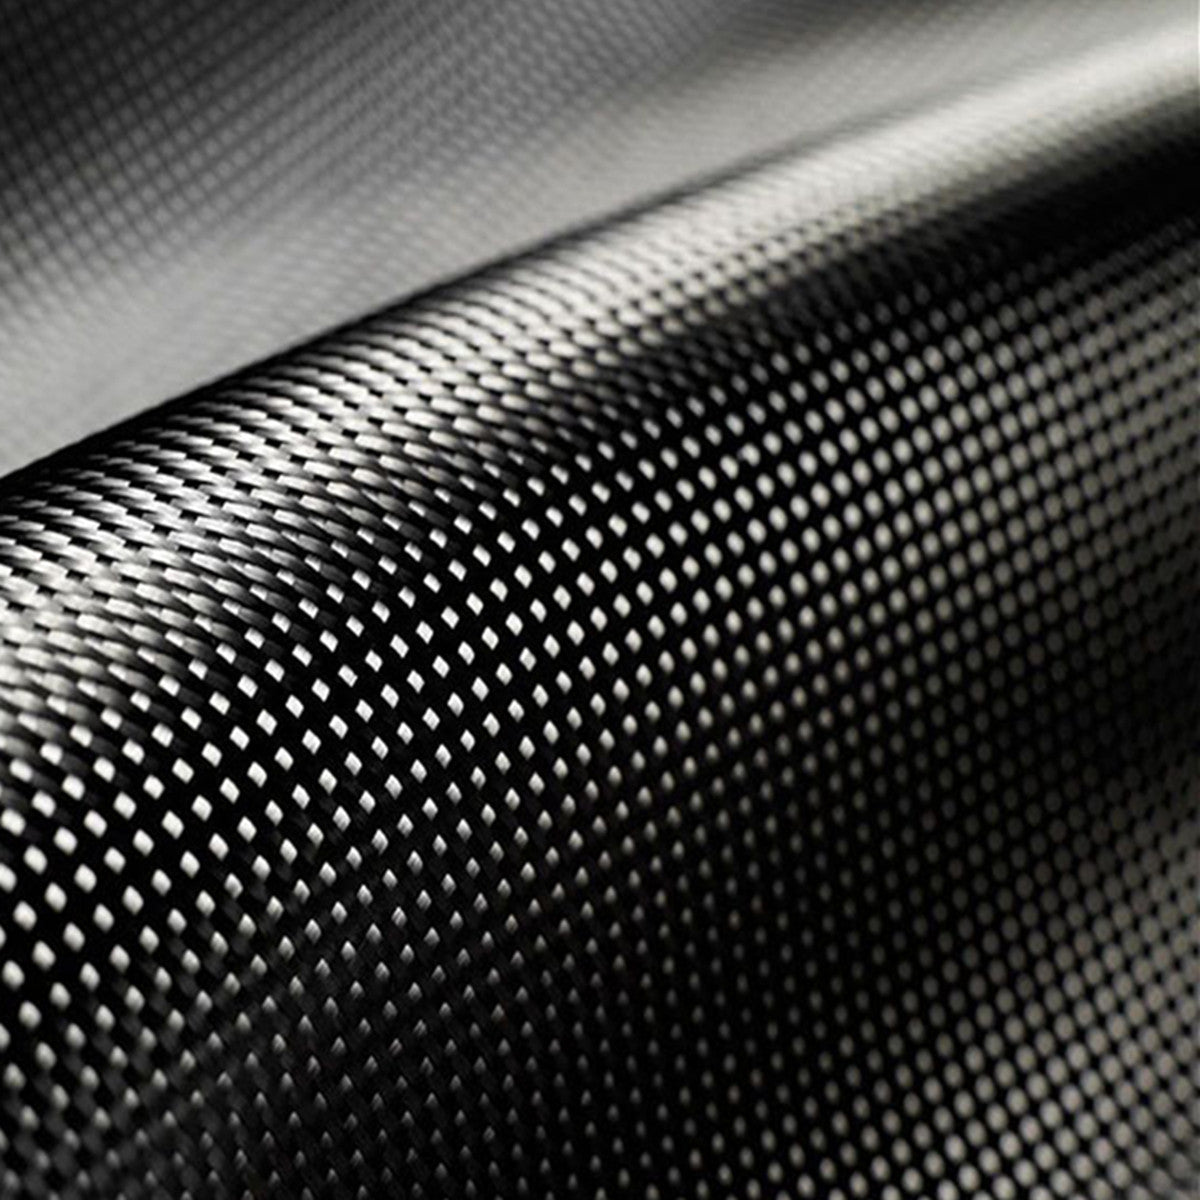 Black 3K 200gsm Carbon Fiber/Fibre Cloth Black Cloth Fabric Twill Weave